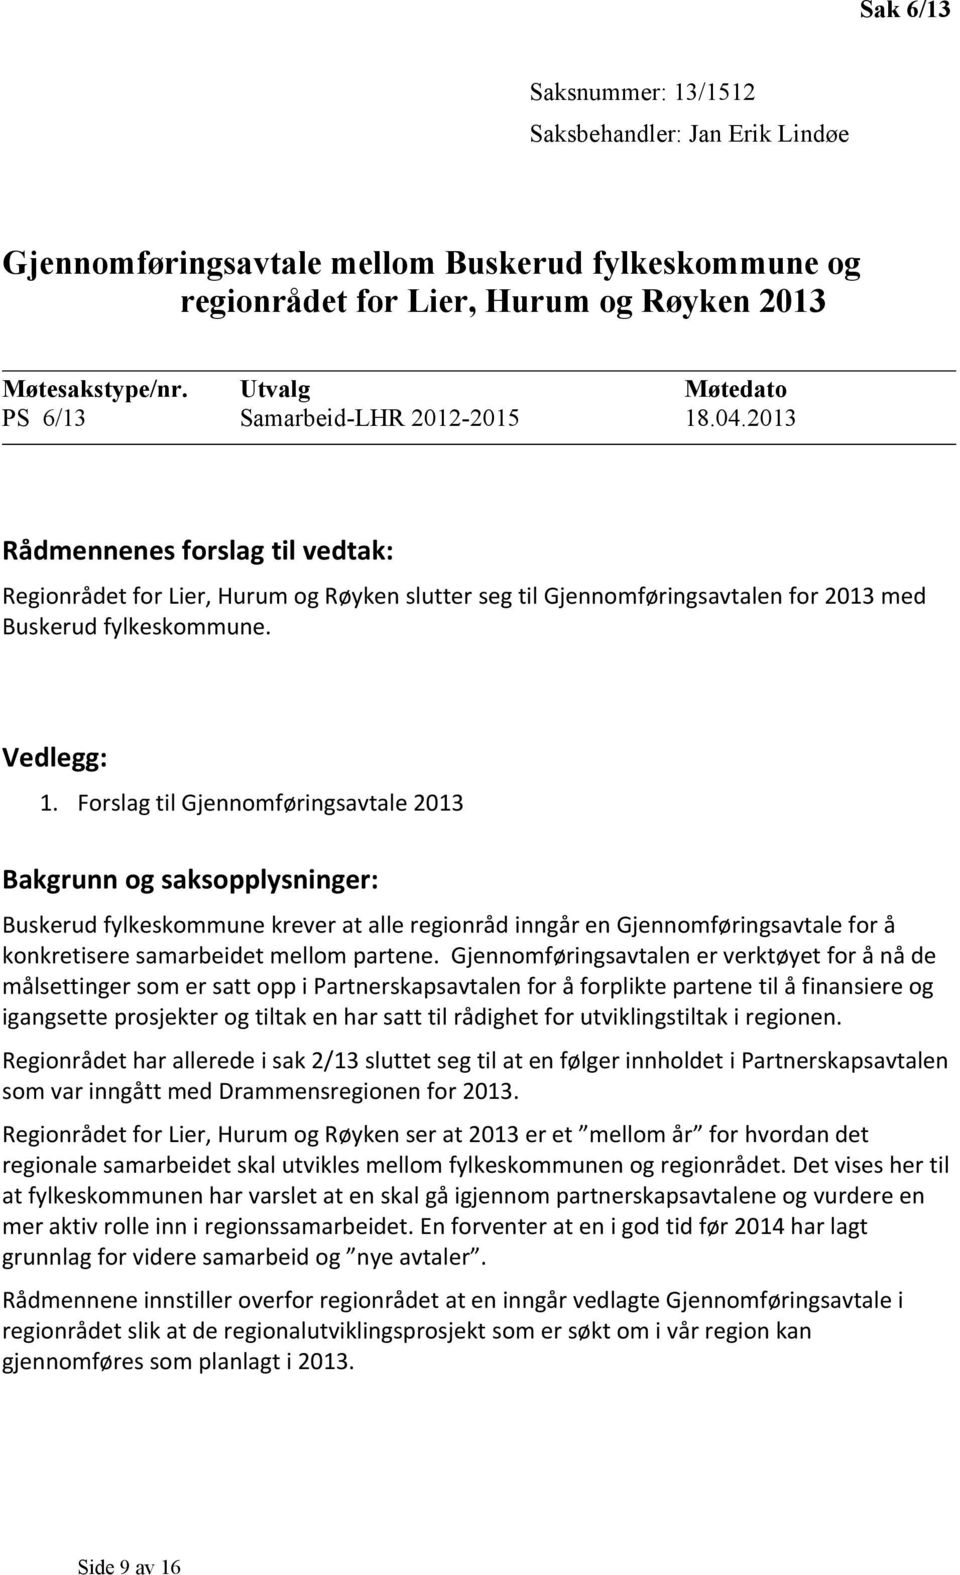 Forslag til Gjennomføringsavtale 2013 Bakgrunn og saksopplysninger: Buskerud fylkeskommune krever at alle regionråd inngår en Gjennomføringsavtale for å konkretisere samarbeidet mellom partene.